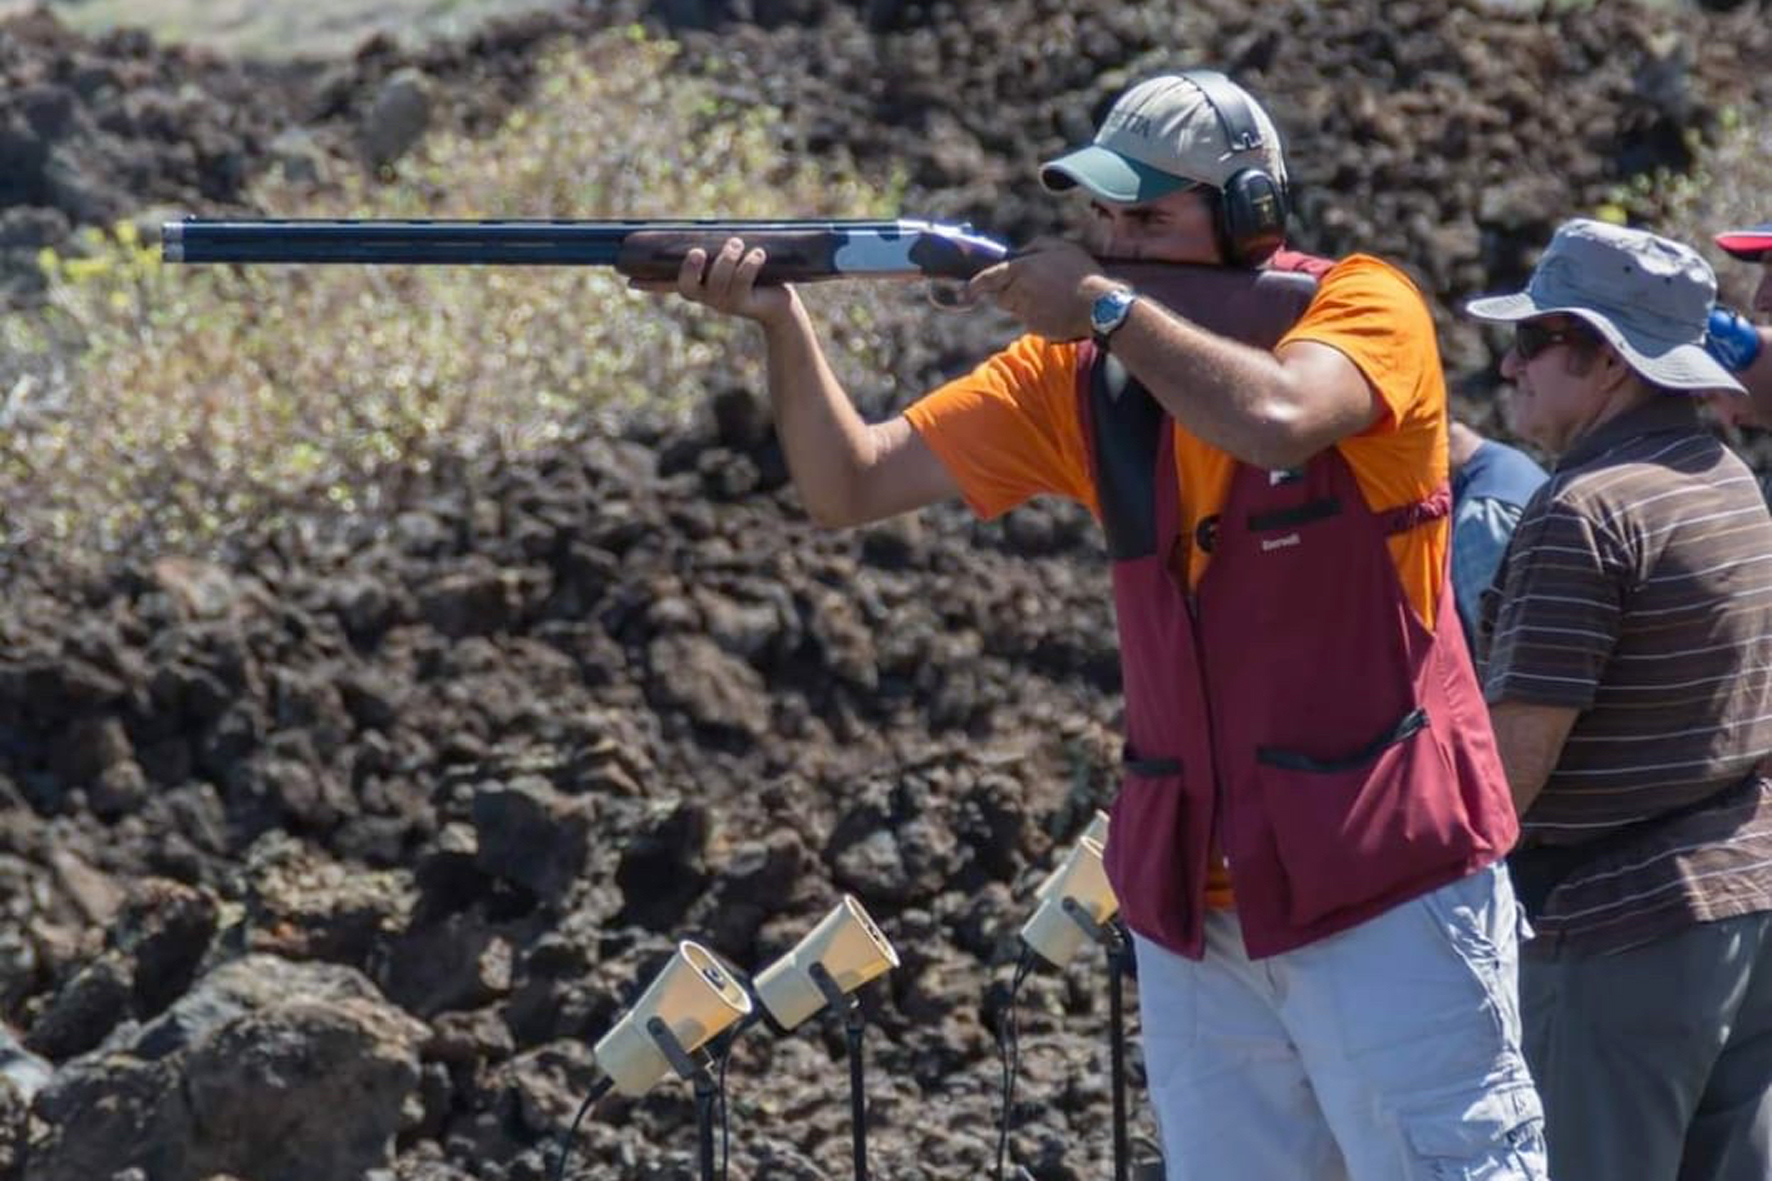 El Club deportivo Herbim organiza el campeonato insular en la modalidad de recorrido de caza